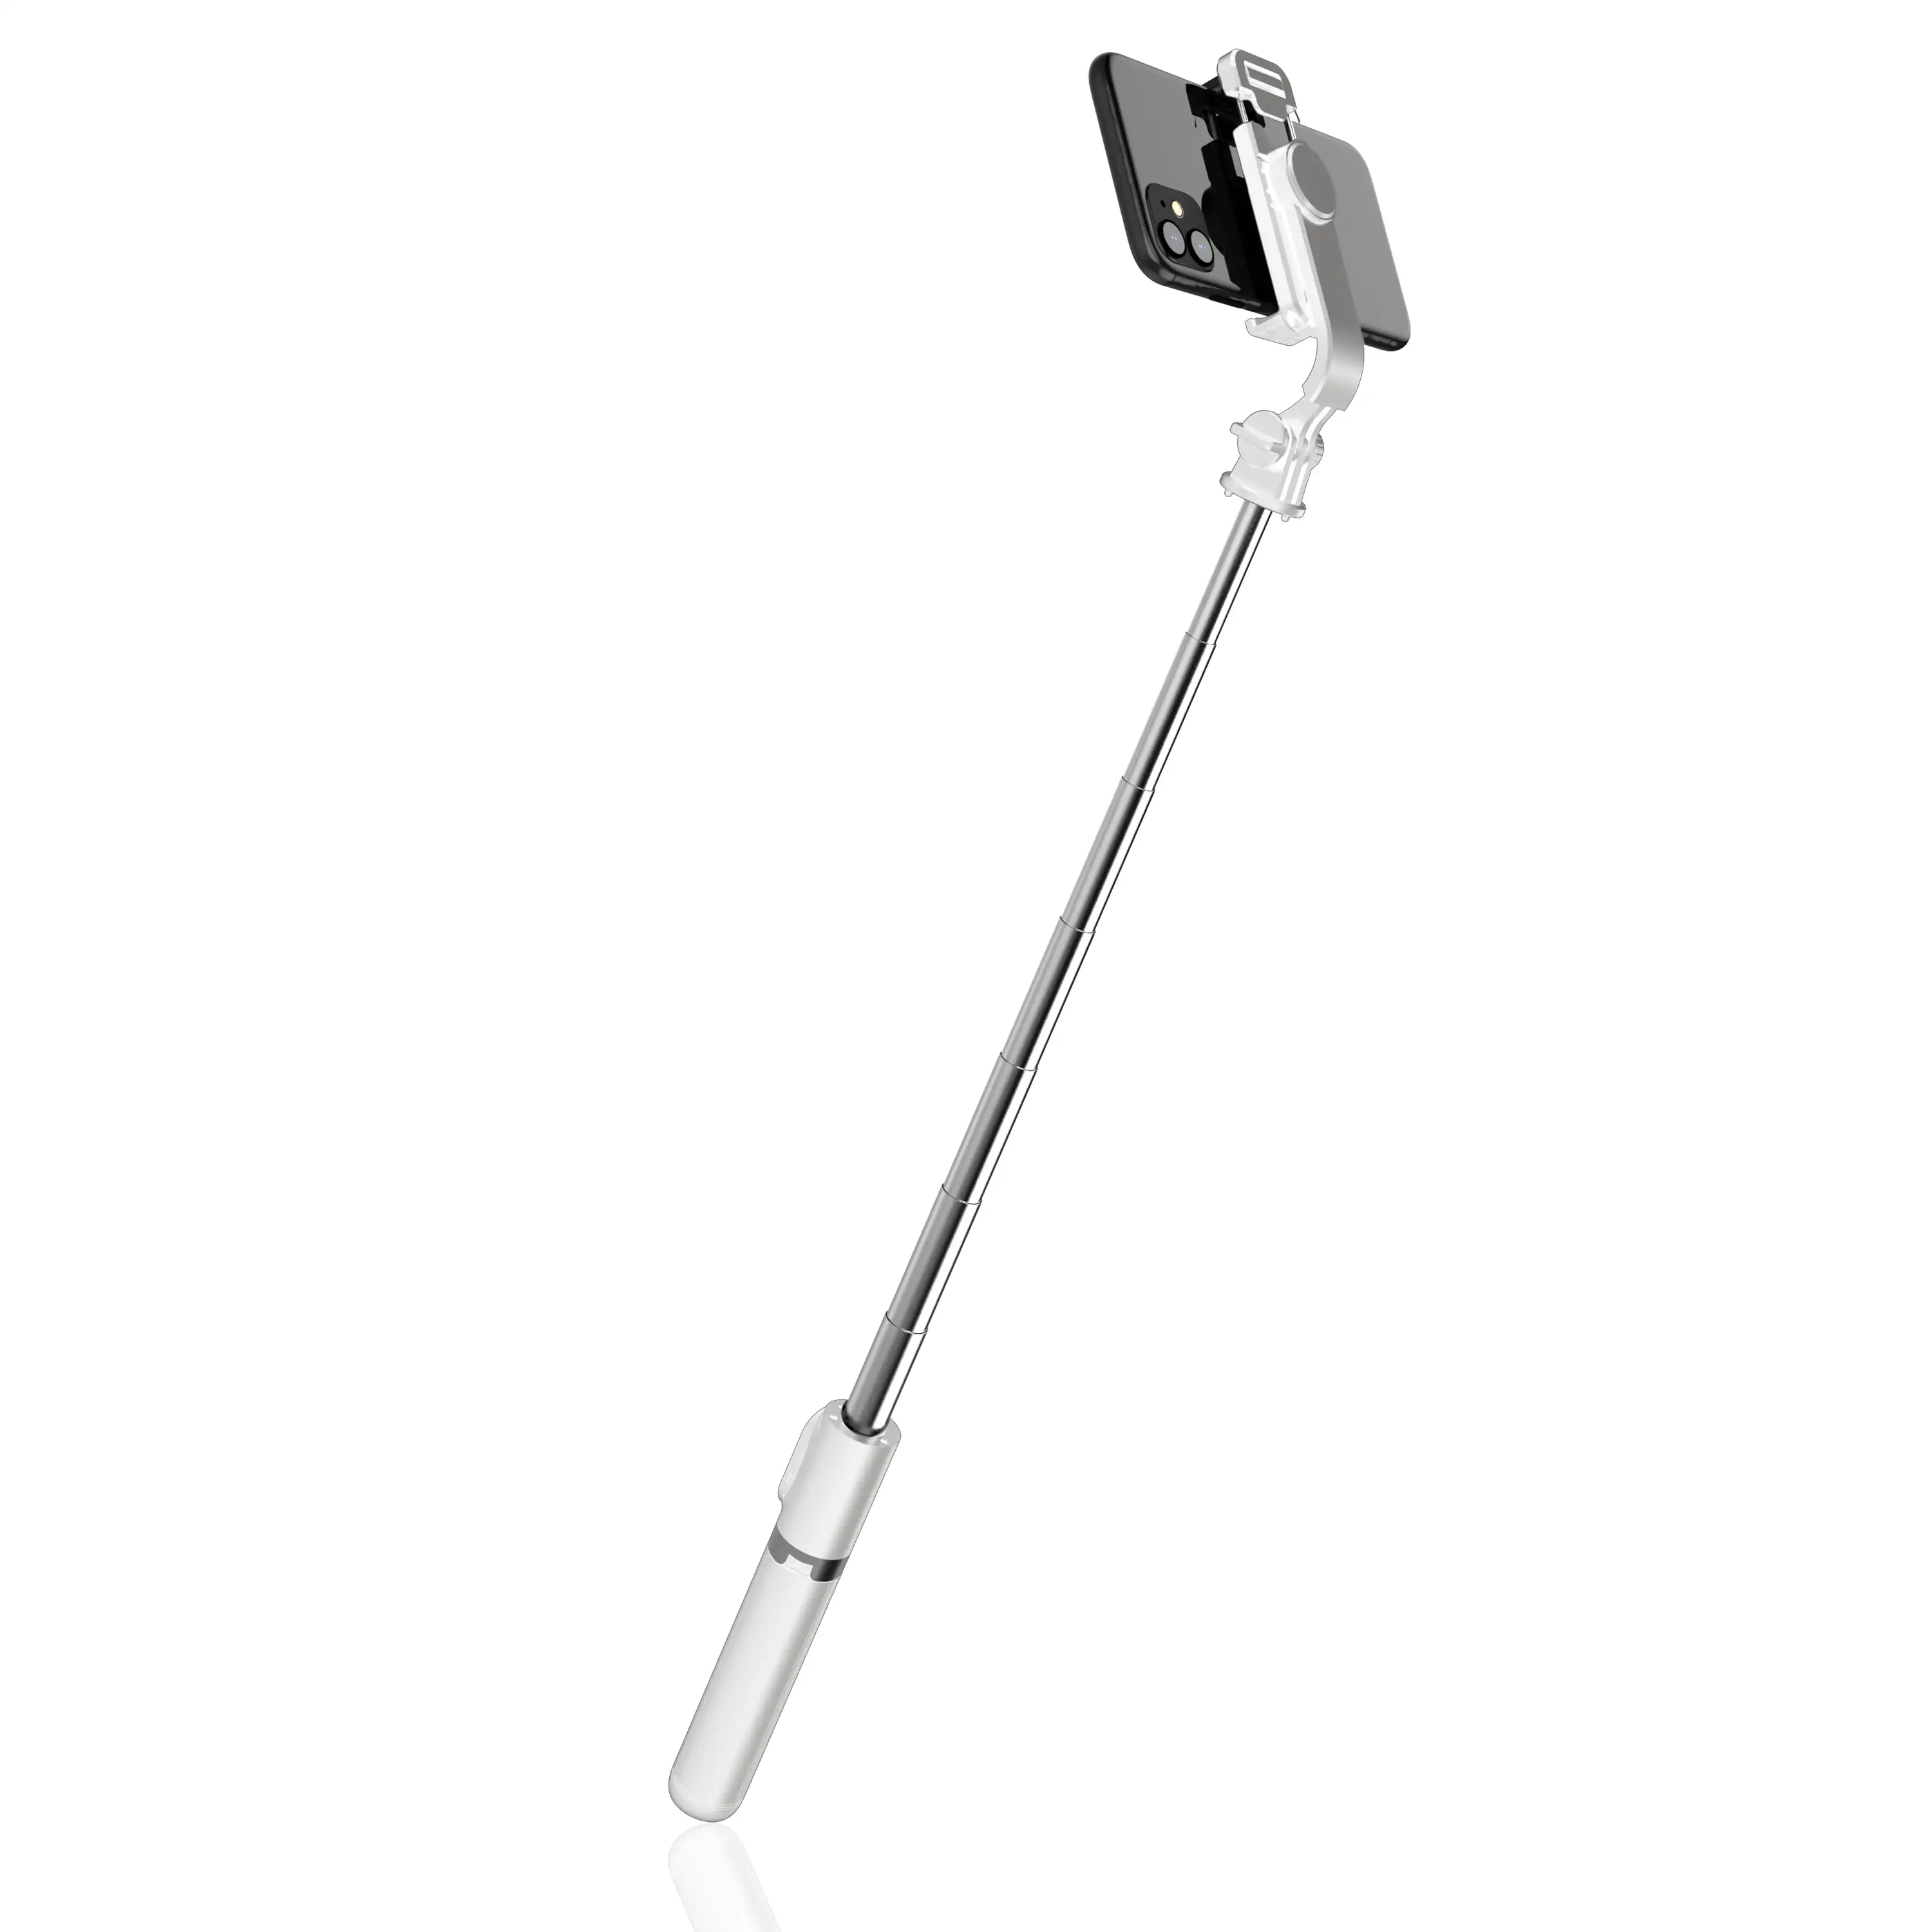 Palo selfie Estabilizador Smartek SMTK-109B trípode Bluetooth 3 en 1 -  Palos Selfie / Monopod - Los mejores precios